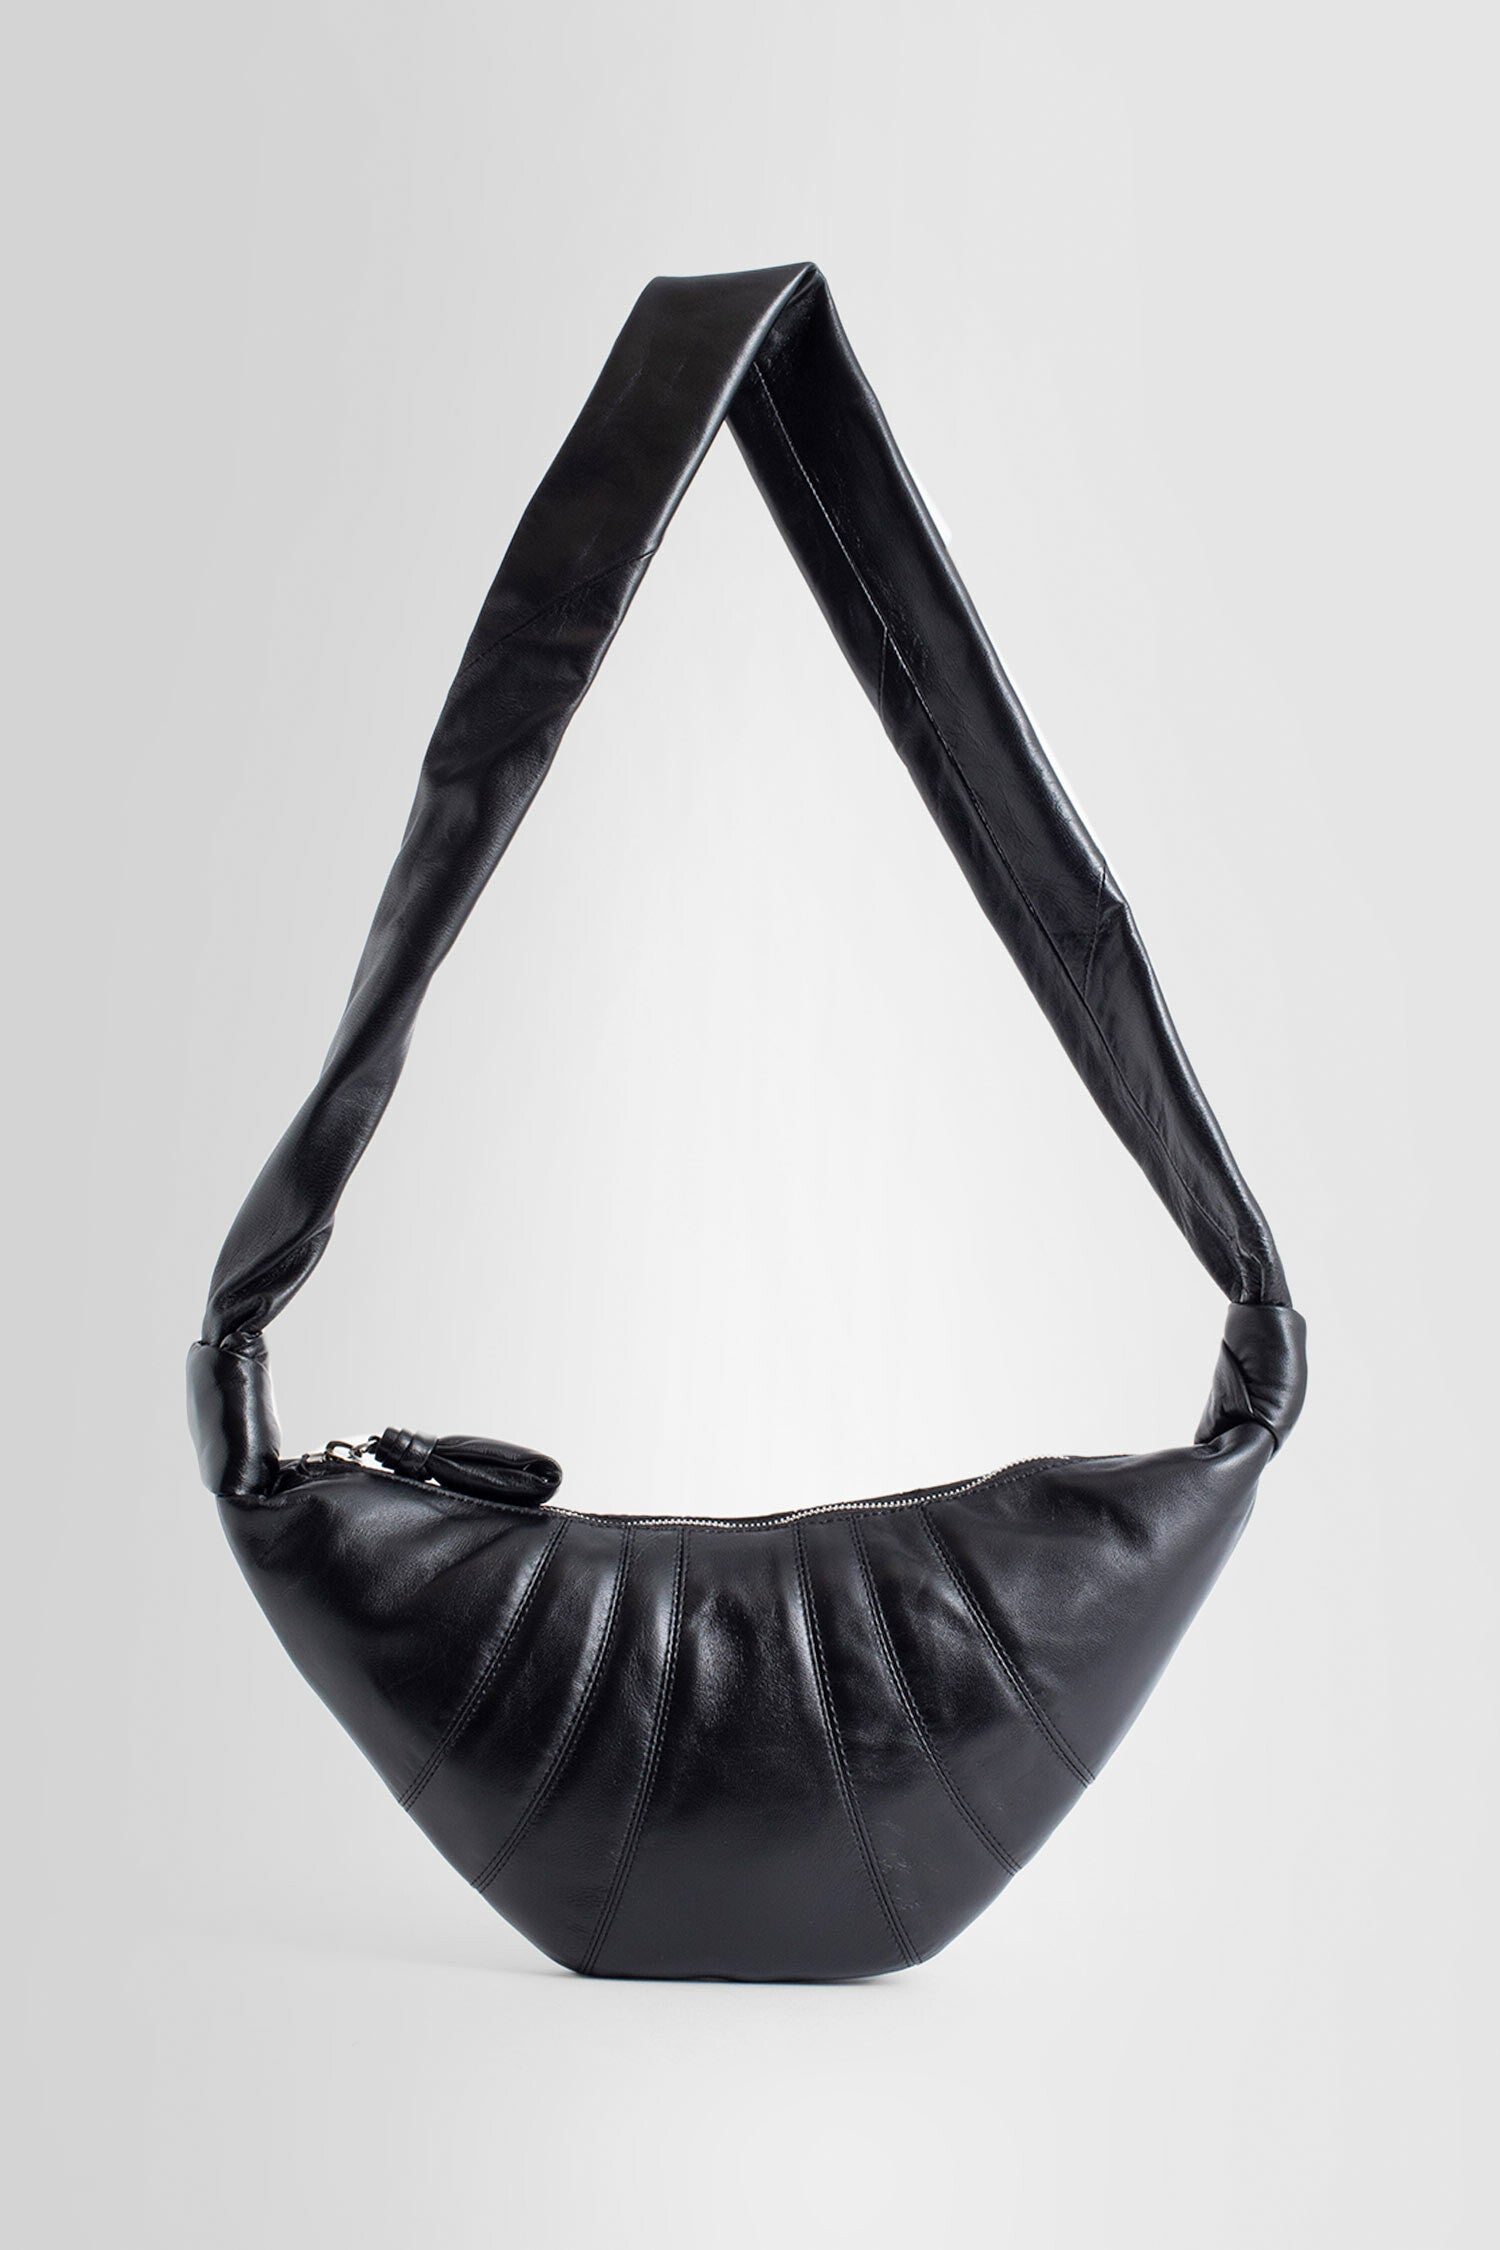 LEMAIRE UNISEX BLACK SHOULDER BAGS